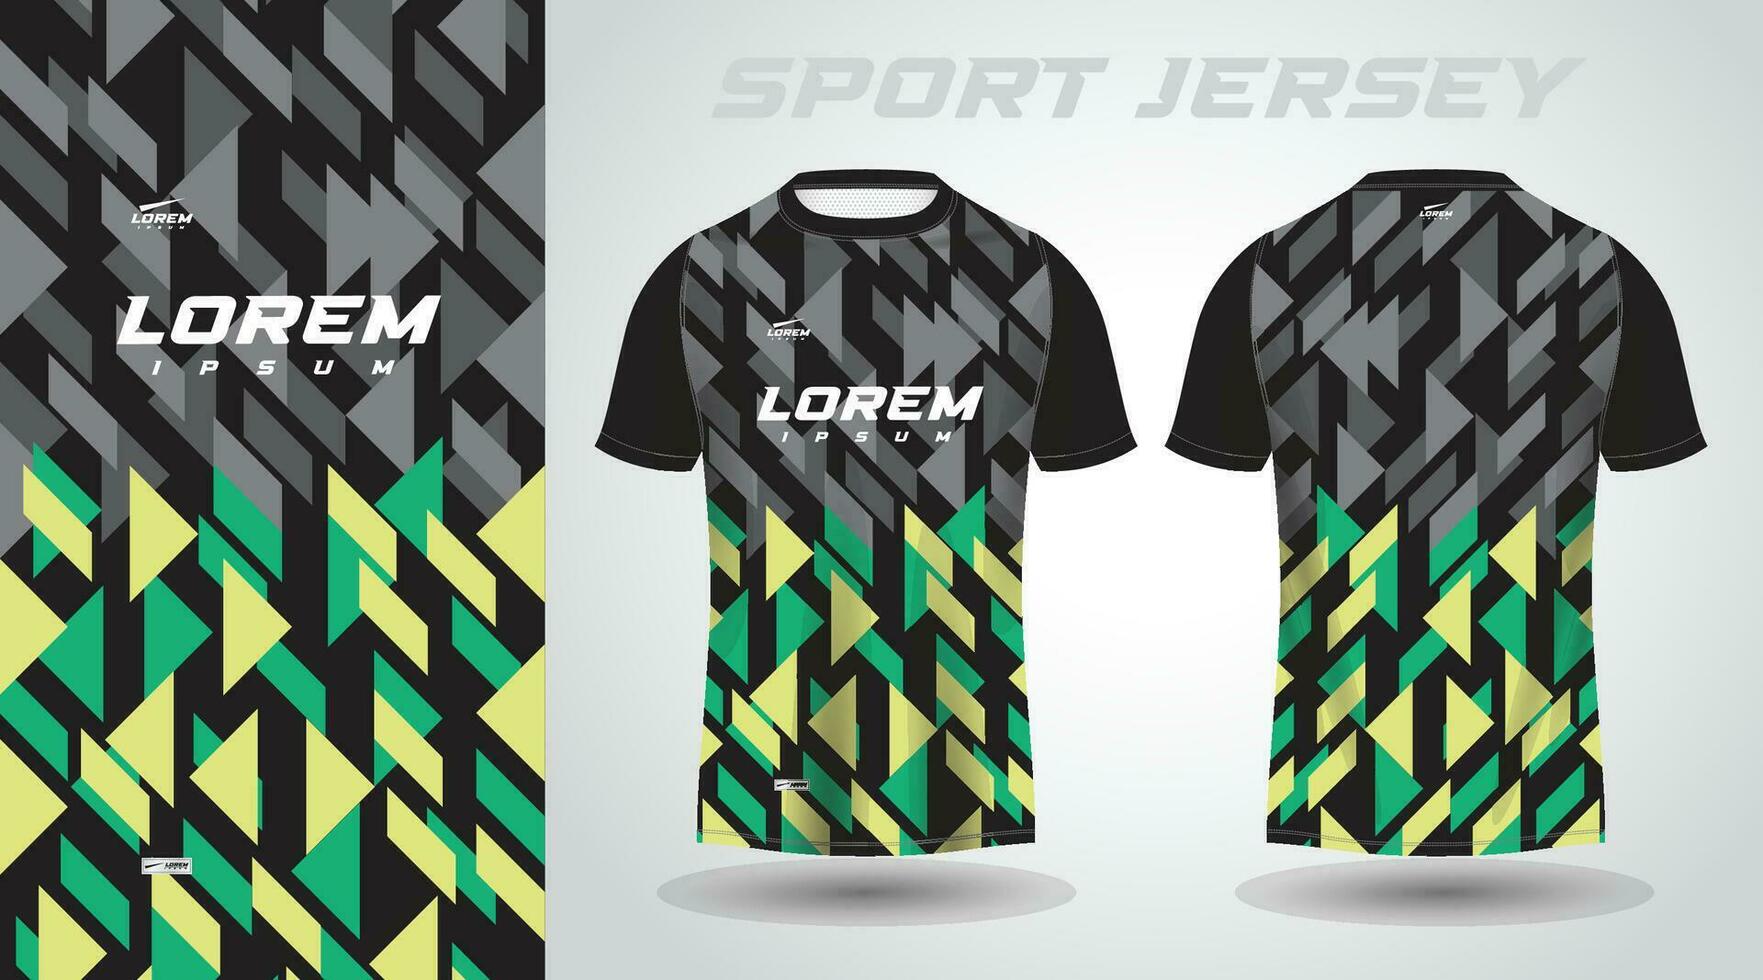 verde nero camicia calcio calcio sport maglia modello design modello vettore